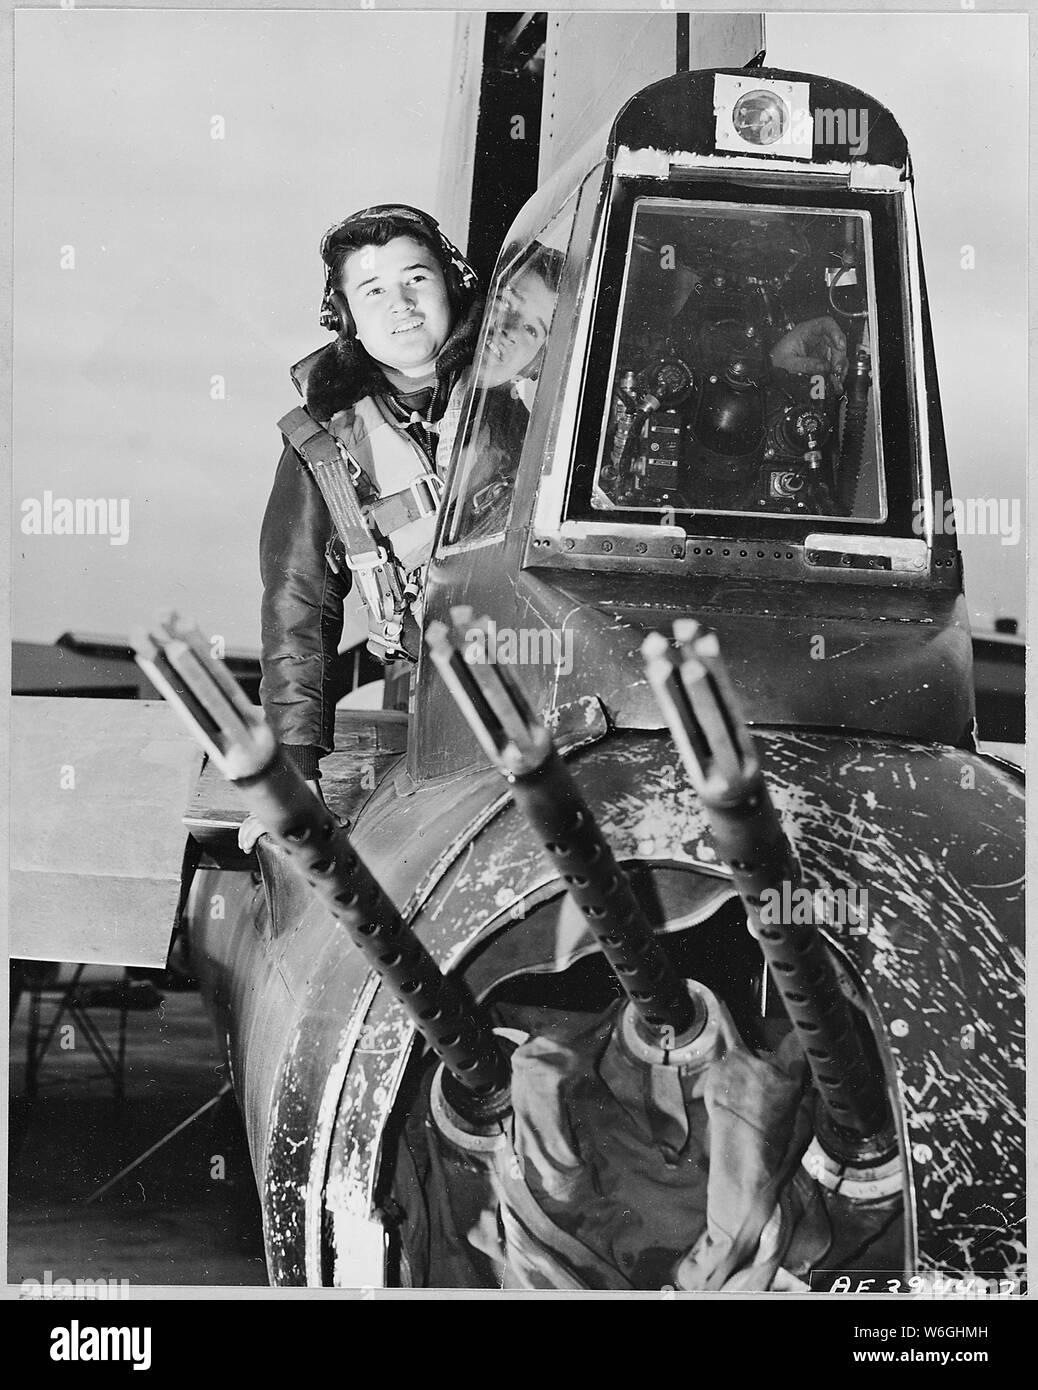 FEAF Bomber Command, le Japon--A/2C Kenneth W. Roberts, d'Weitchpee, Californie, affecté à la 98e,-Bomb Wing, vérifie son trio de queue de calibre .50 de stingers avant qu'une autre mission au-dessus de la Corée du Nord dans son U.S. Air Force B-29 Superfort ; Portée et contenu : FEAF Bomber Command, le Japon--A/2C Kenneth W. Roberts, d'Weitchpee, Californie, affecté à la 98e,-Bomb Wing, vérifie son trio de queue de calibre .50 de stingers avant qu'une autre mission au-dessus de la Corée du Nord dans son U.S. Air Force B-29 Superfort. Lorsque son avion entre dans le territoire rouge, Roberts yeux sont d'une importance vitale. Assis dans le solit Banque D'Images